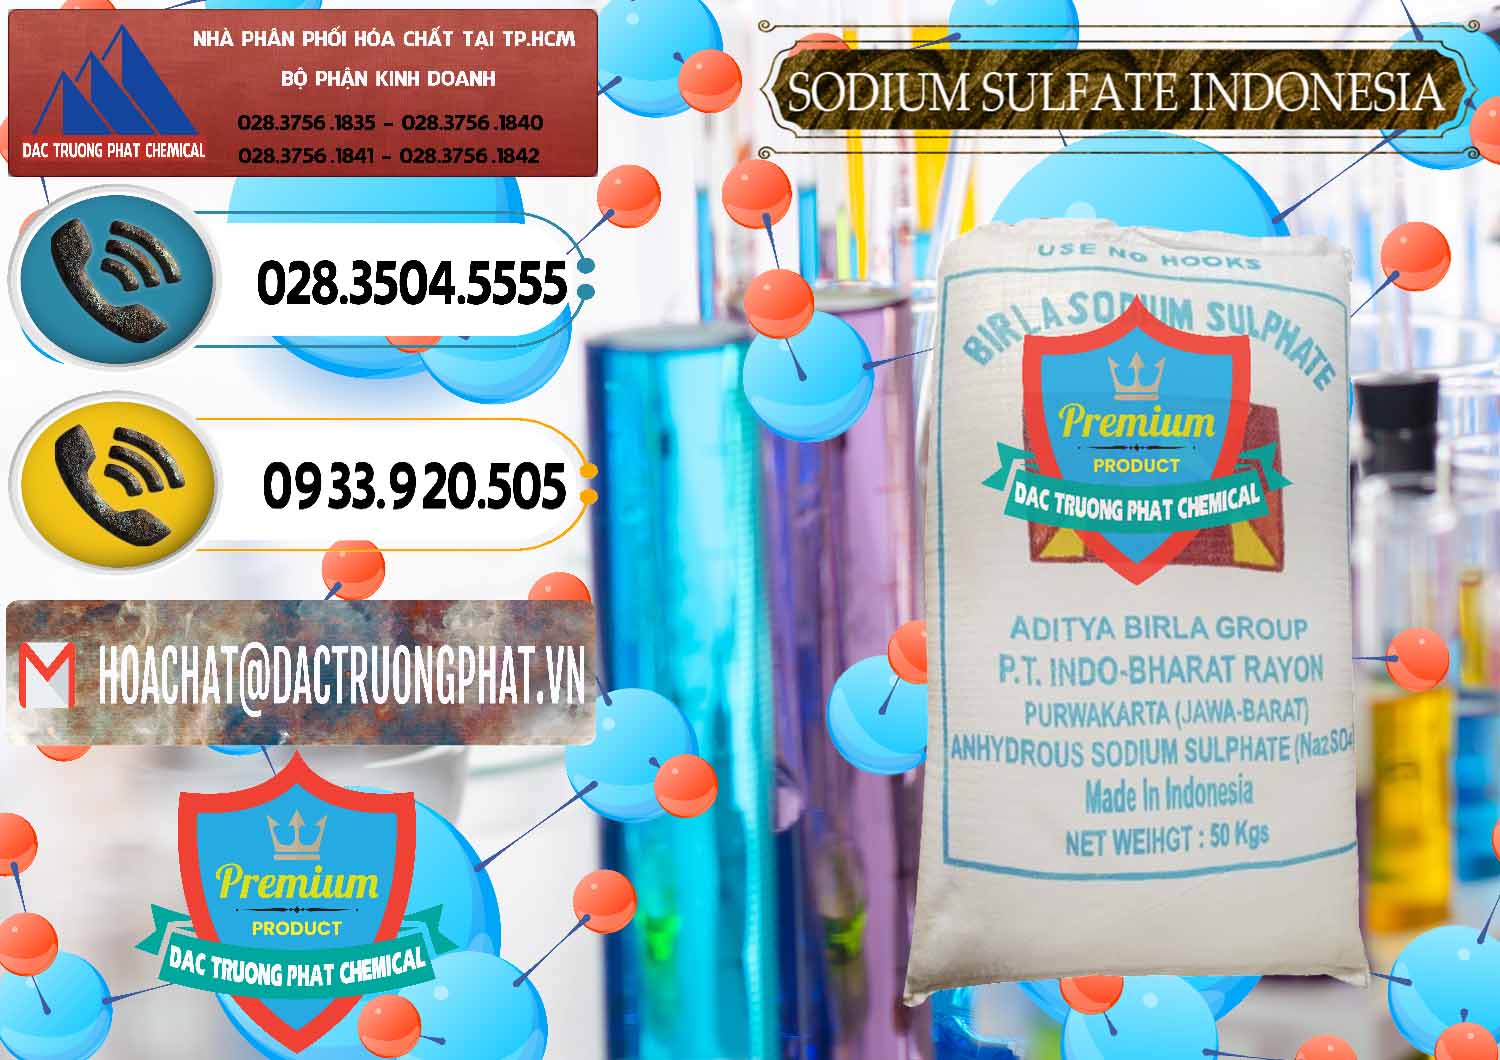 Cty nhập khẩu & bán Sodium Sulphate - Muối Sunfat Na2SO4 99% Indonesia - 0459 - Đơn vị chuyên phân phối và nhập khẩu hóa chất tại TP.HCM - hoachatdetnhuom.vn